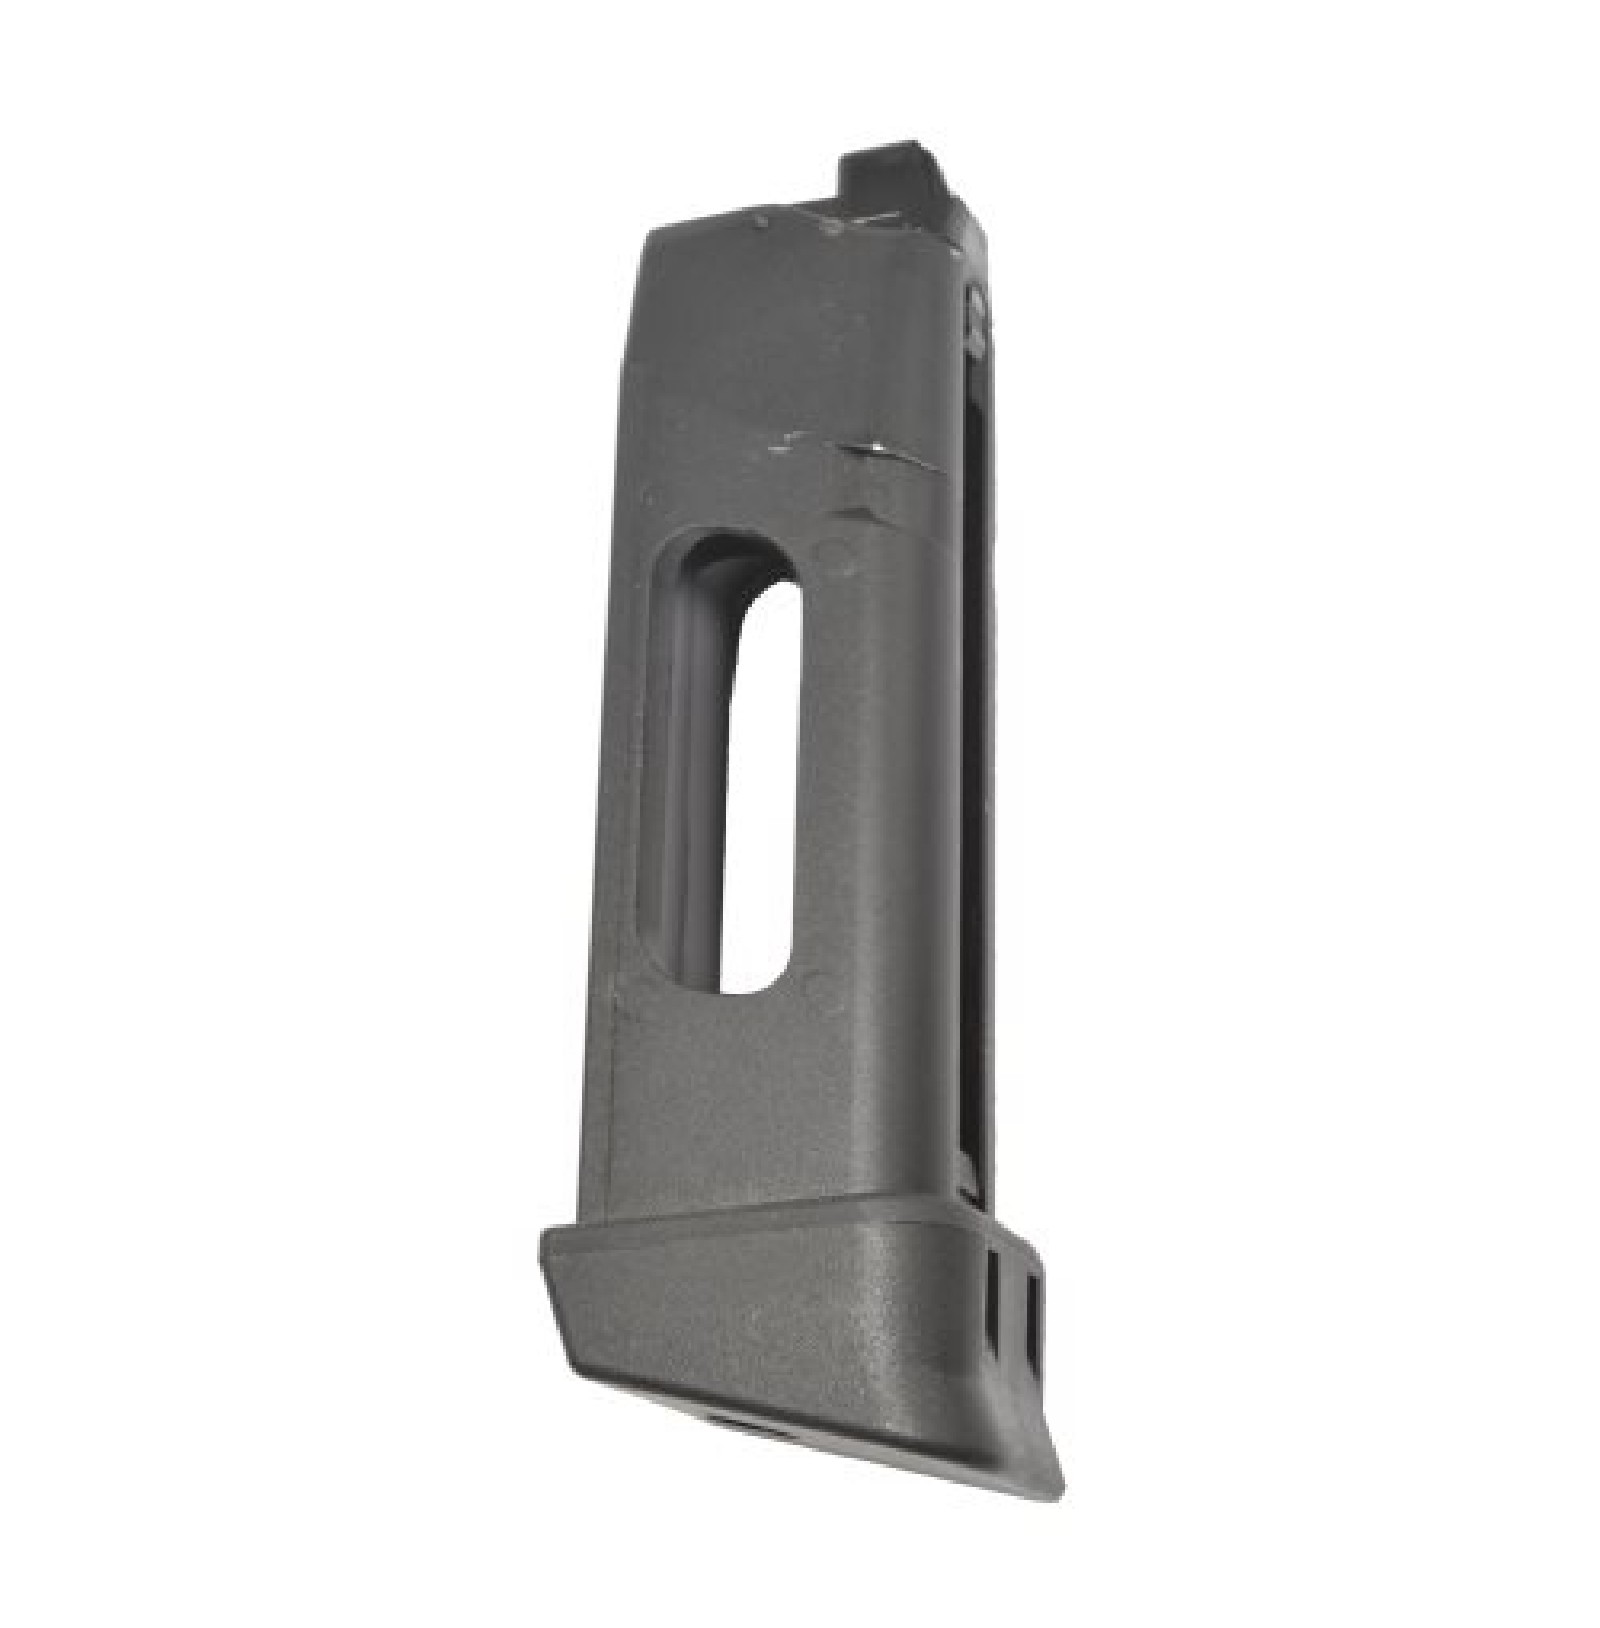 Cybergun - Chargeur CO2 pour Glock 17/19 VFC - 17 bbs - Noir